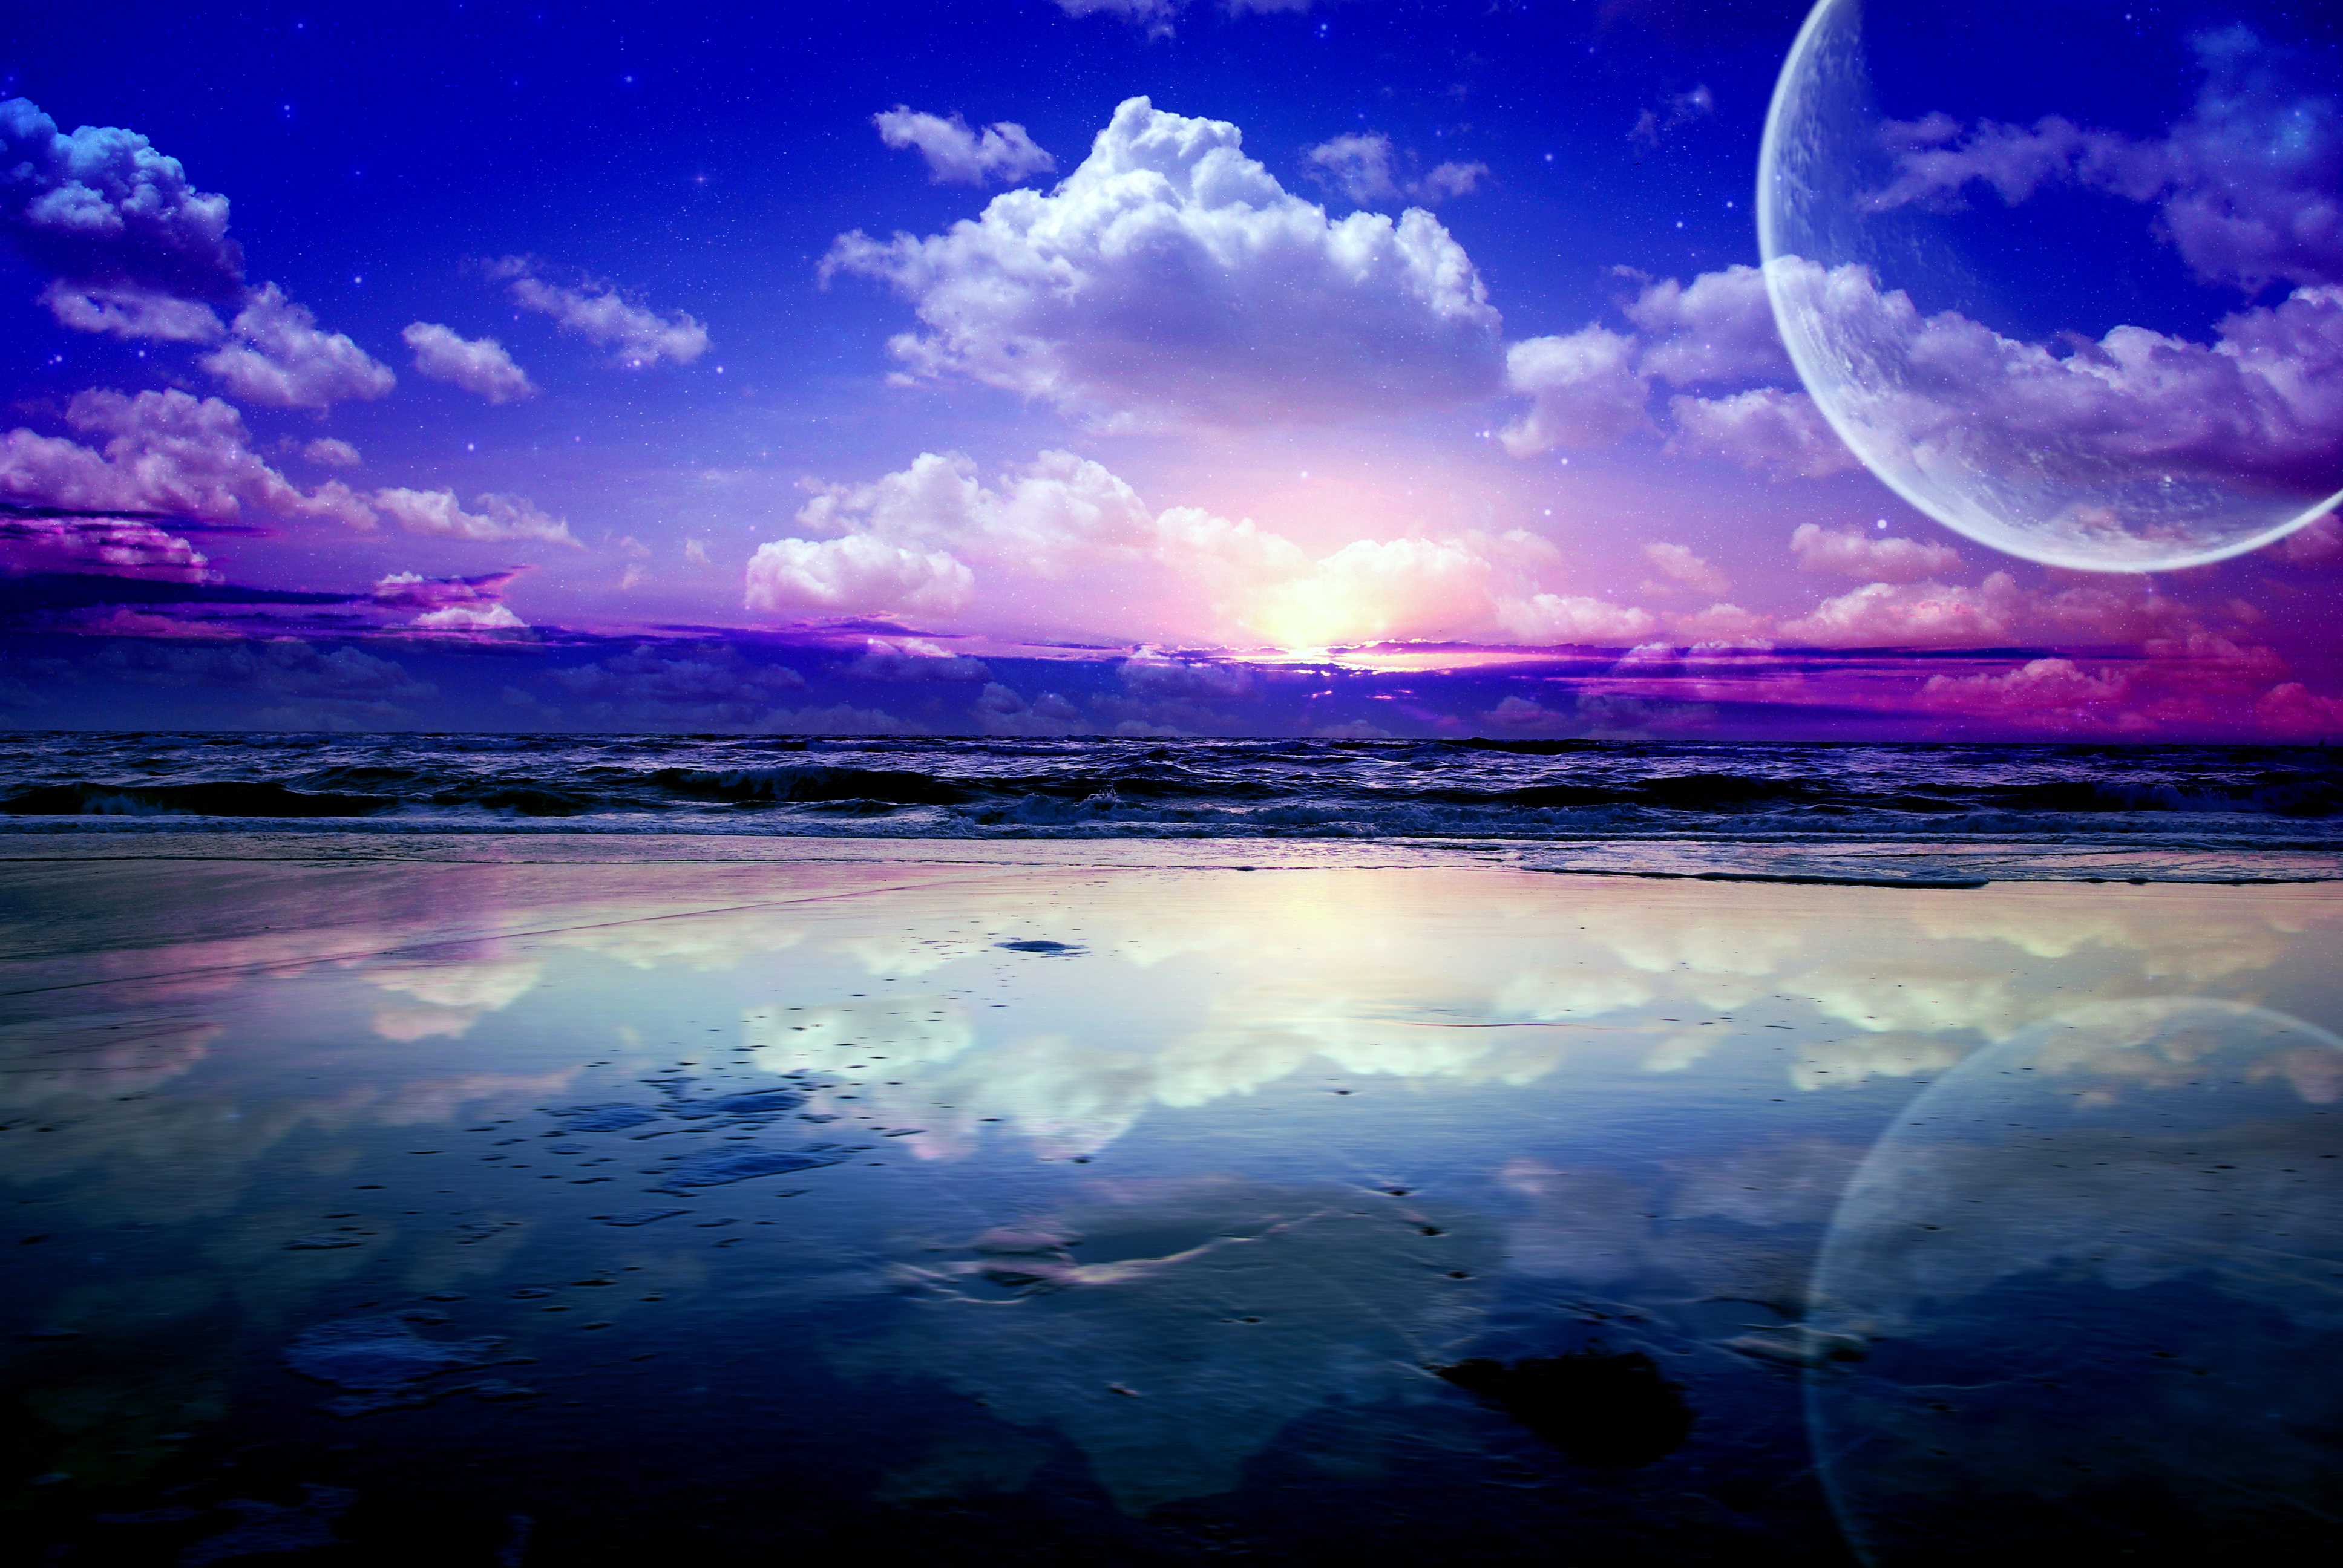 Заставка на телефон ночь. Космический пейзаж. Море и космос. Волшебный закат. Фантастическое море.